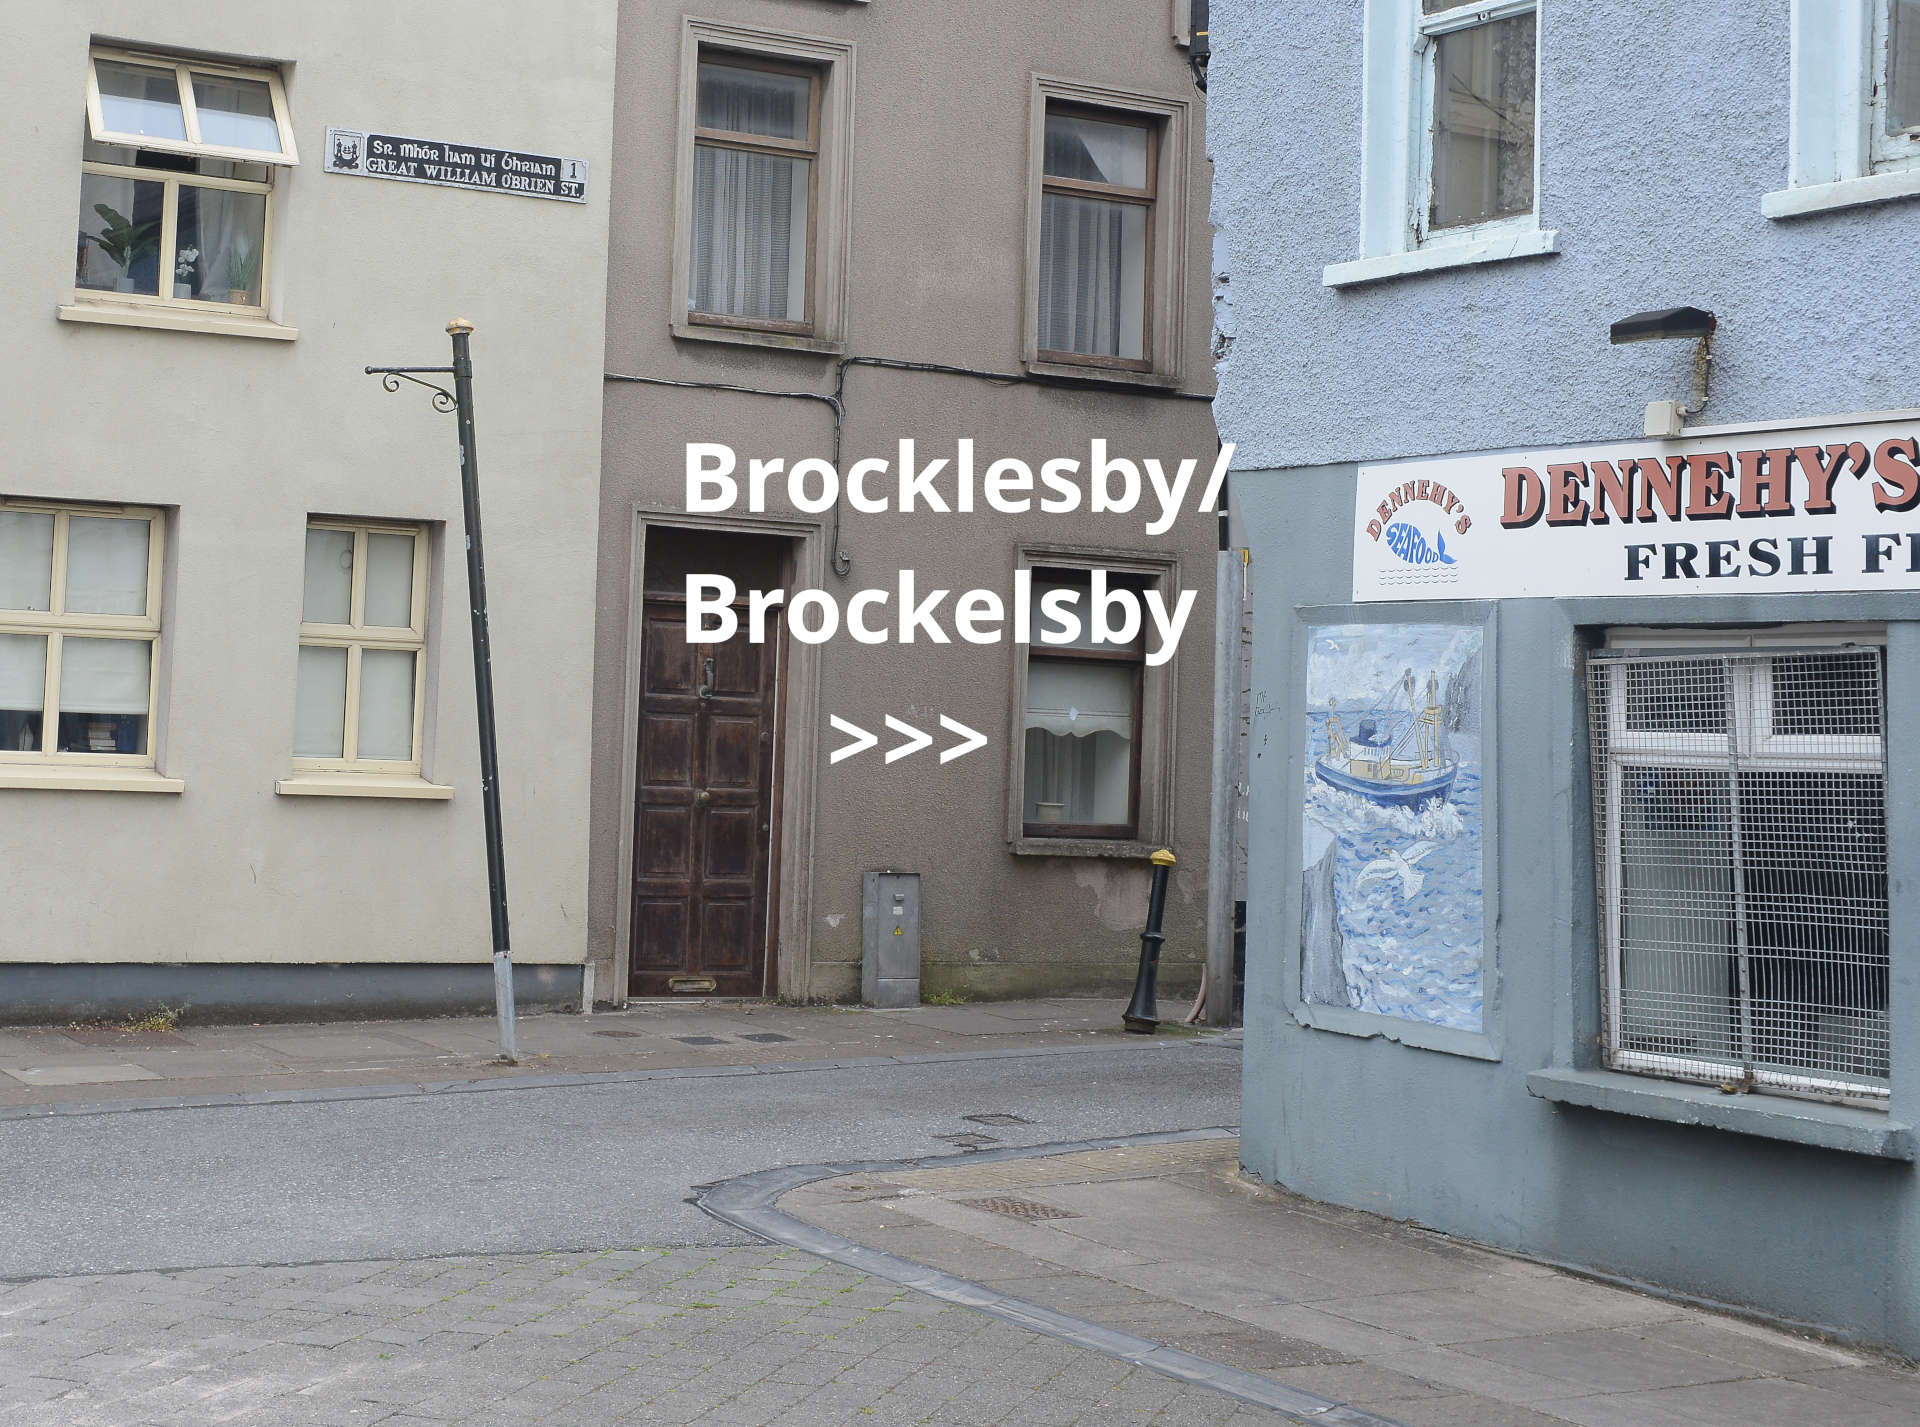 Great William O'Brien Street, Brocklesby Street, Brockelsby Street, Blackpool, Cork